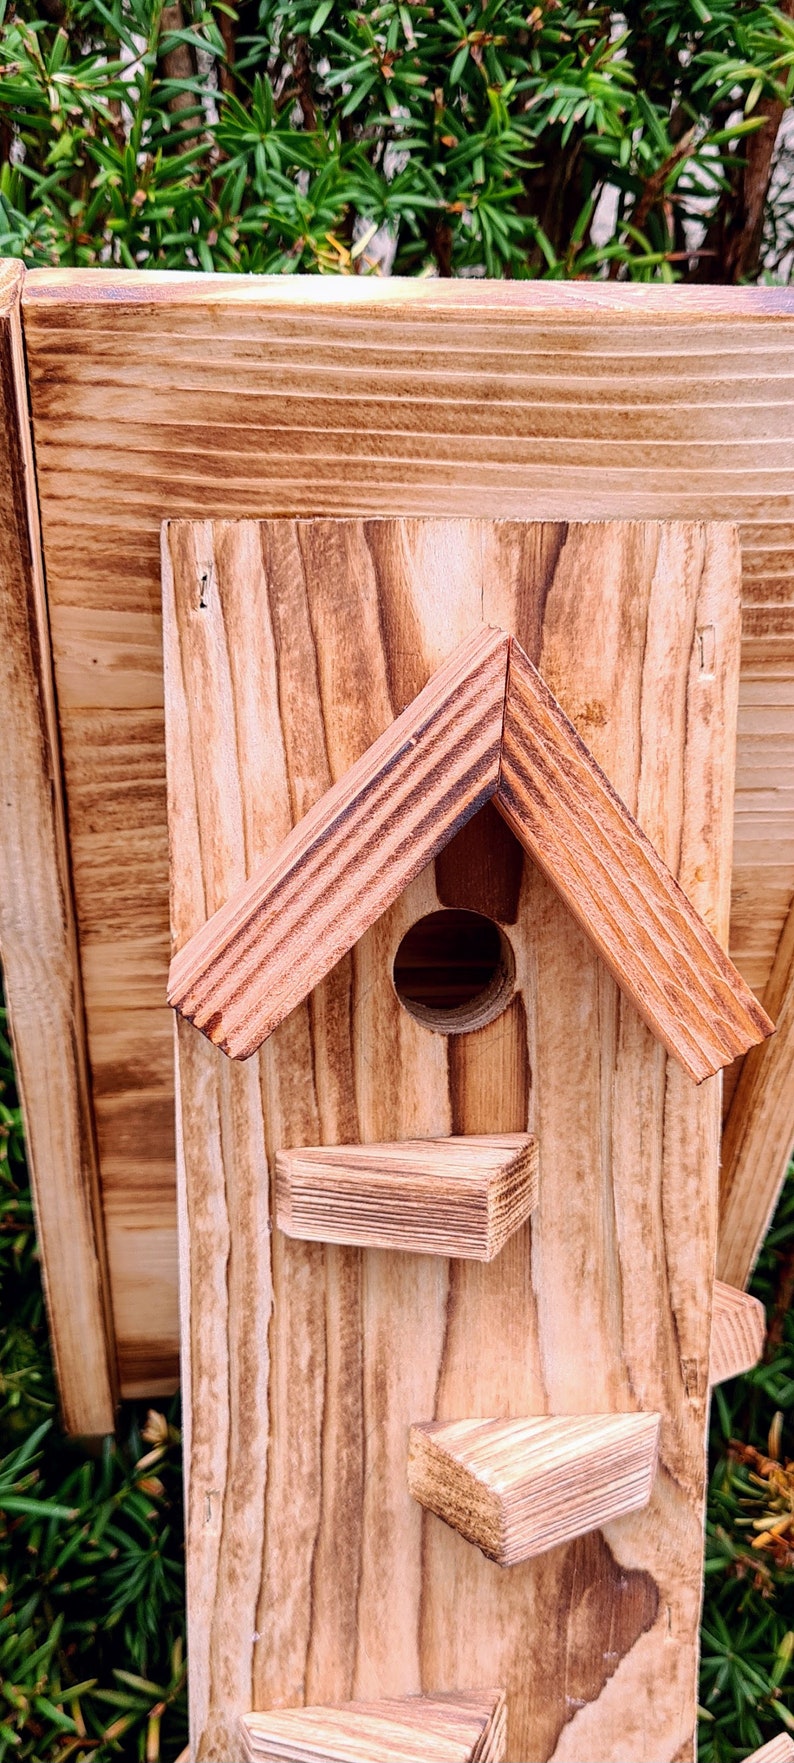 Wooden feeder, feeder, birdhouse, garden decoration, nature, rural, handmade, gift image 6